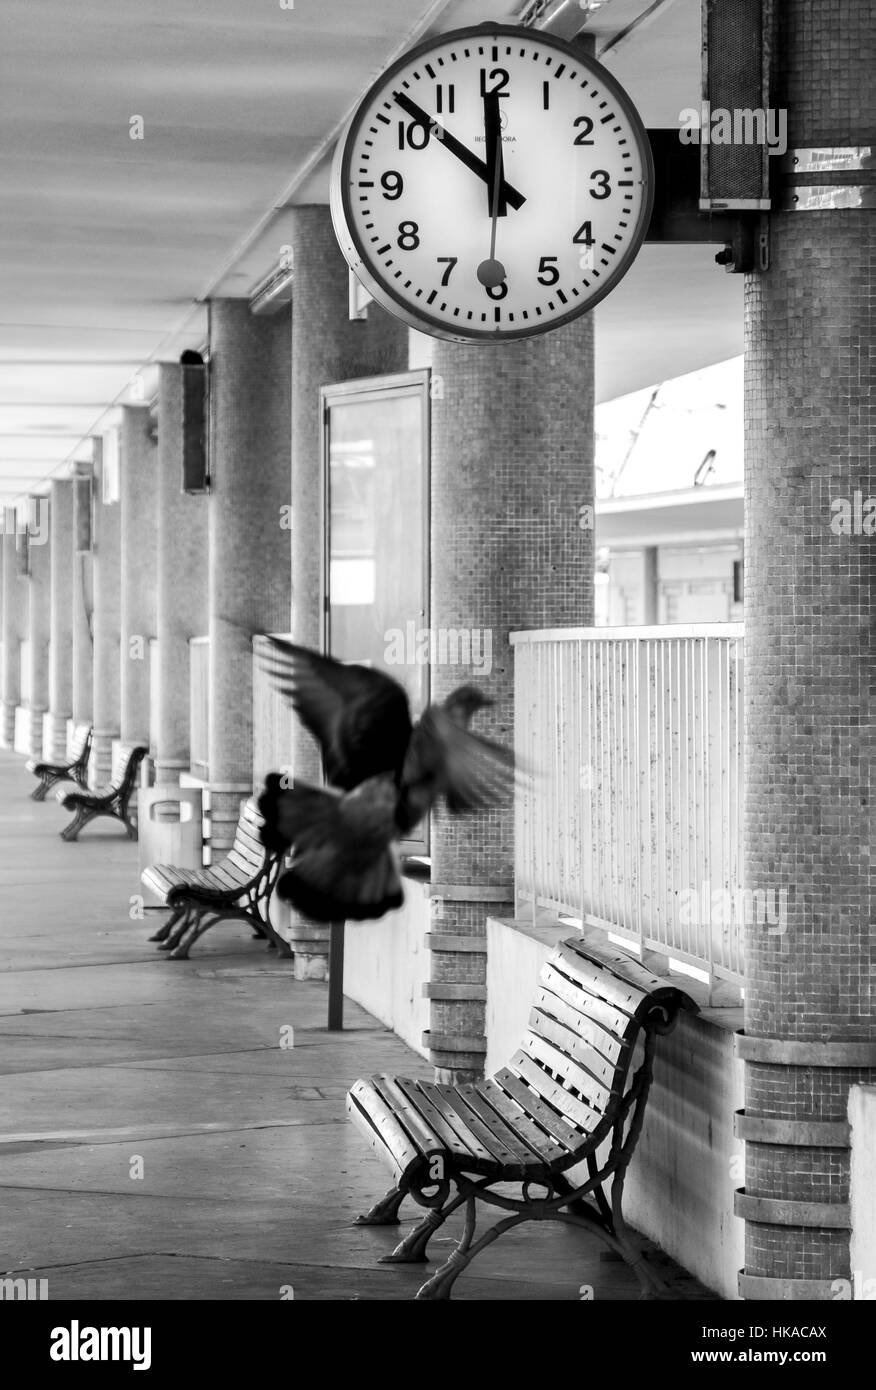 Moment, wenn die Zeit bleibt stehen, und jeder ist perfekt. Bahnhofsuhr zu trainieren und fliegende Tauben einfrieren. Nostalgische Atmosphäre Stockfoto